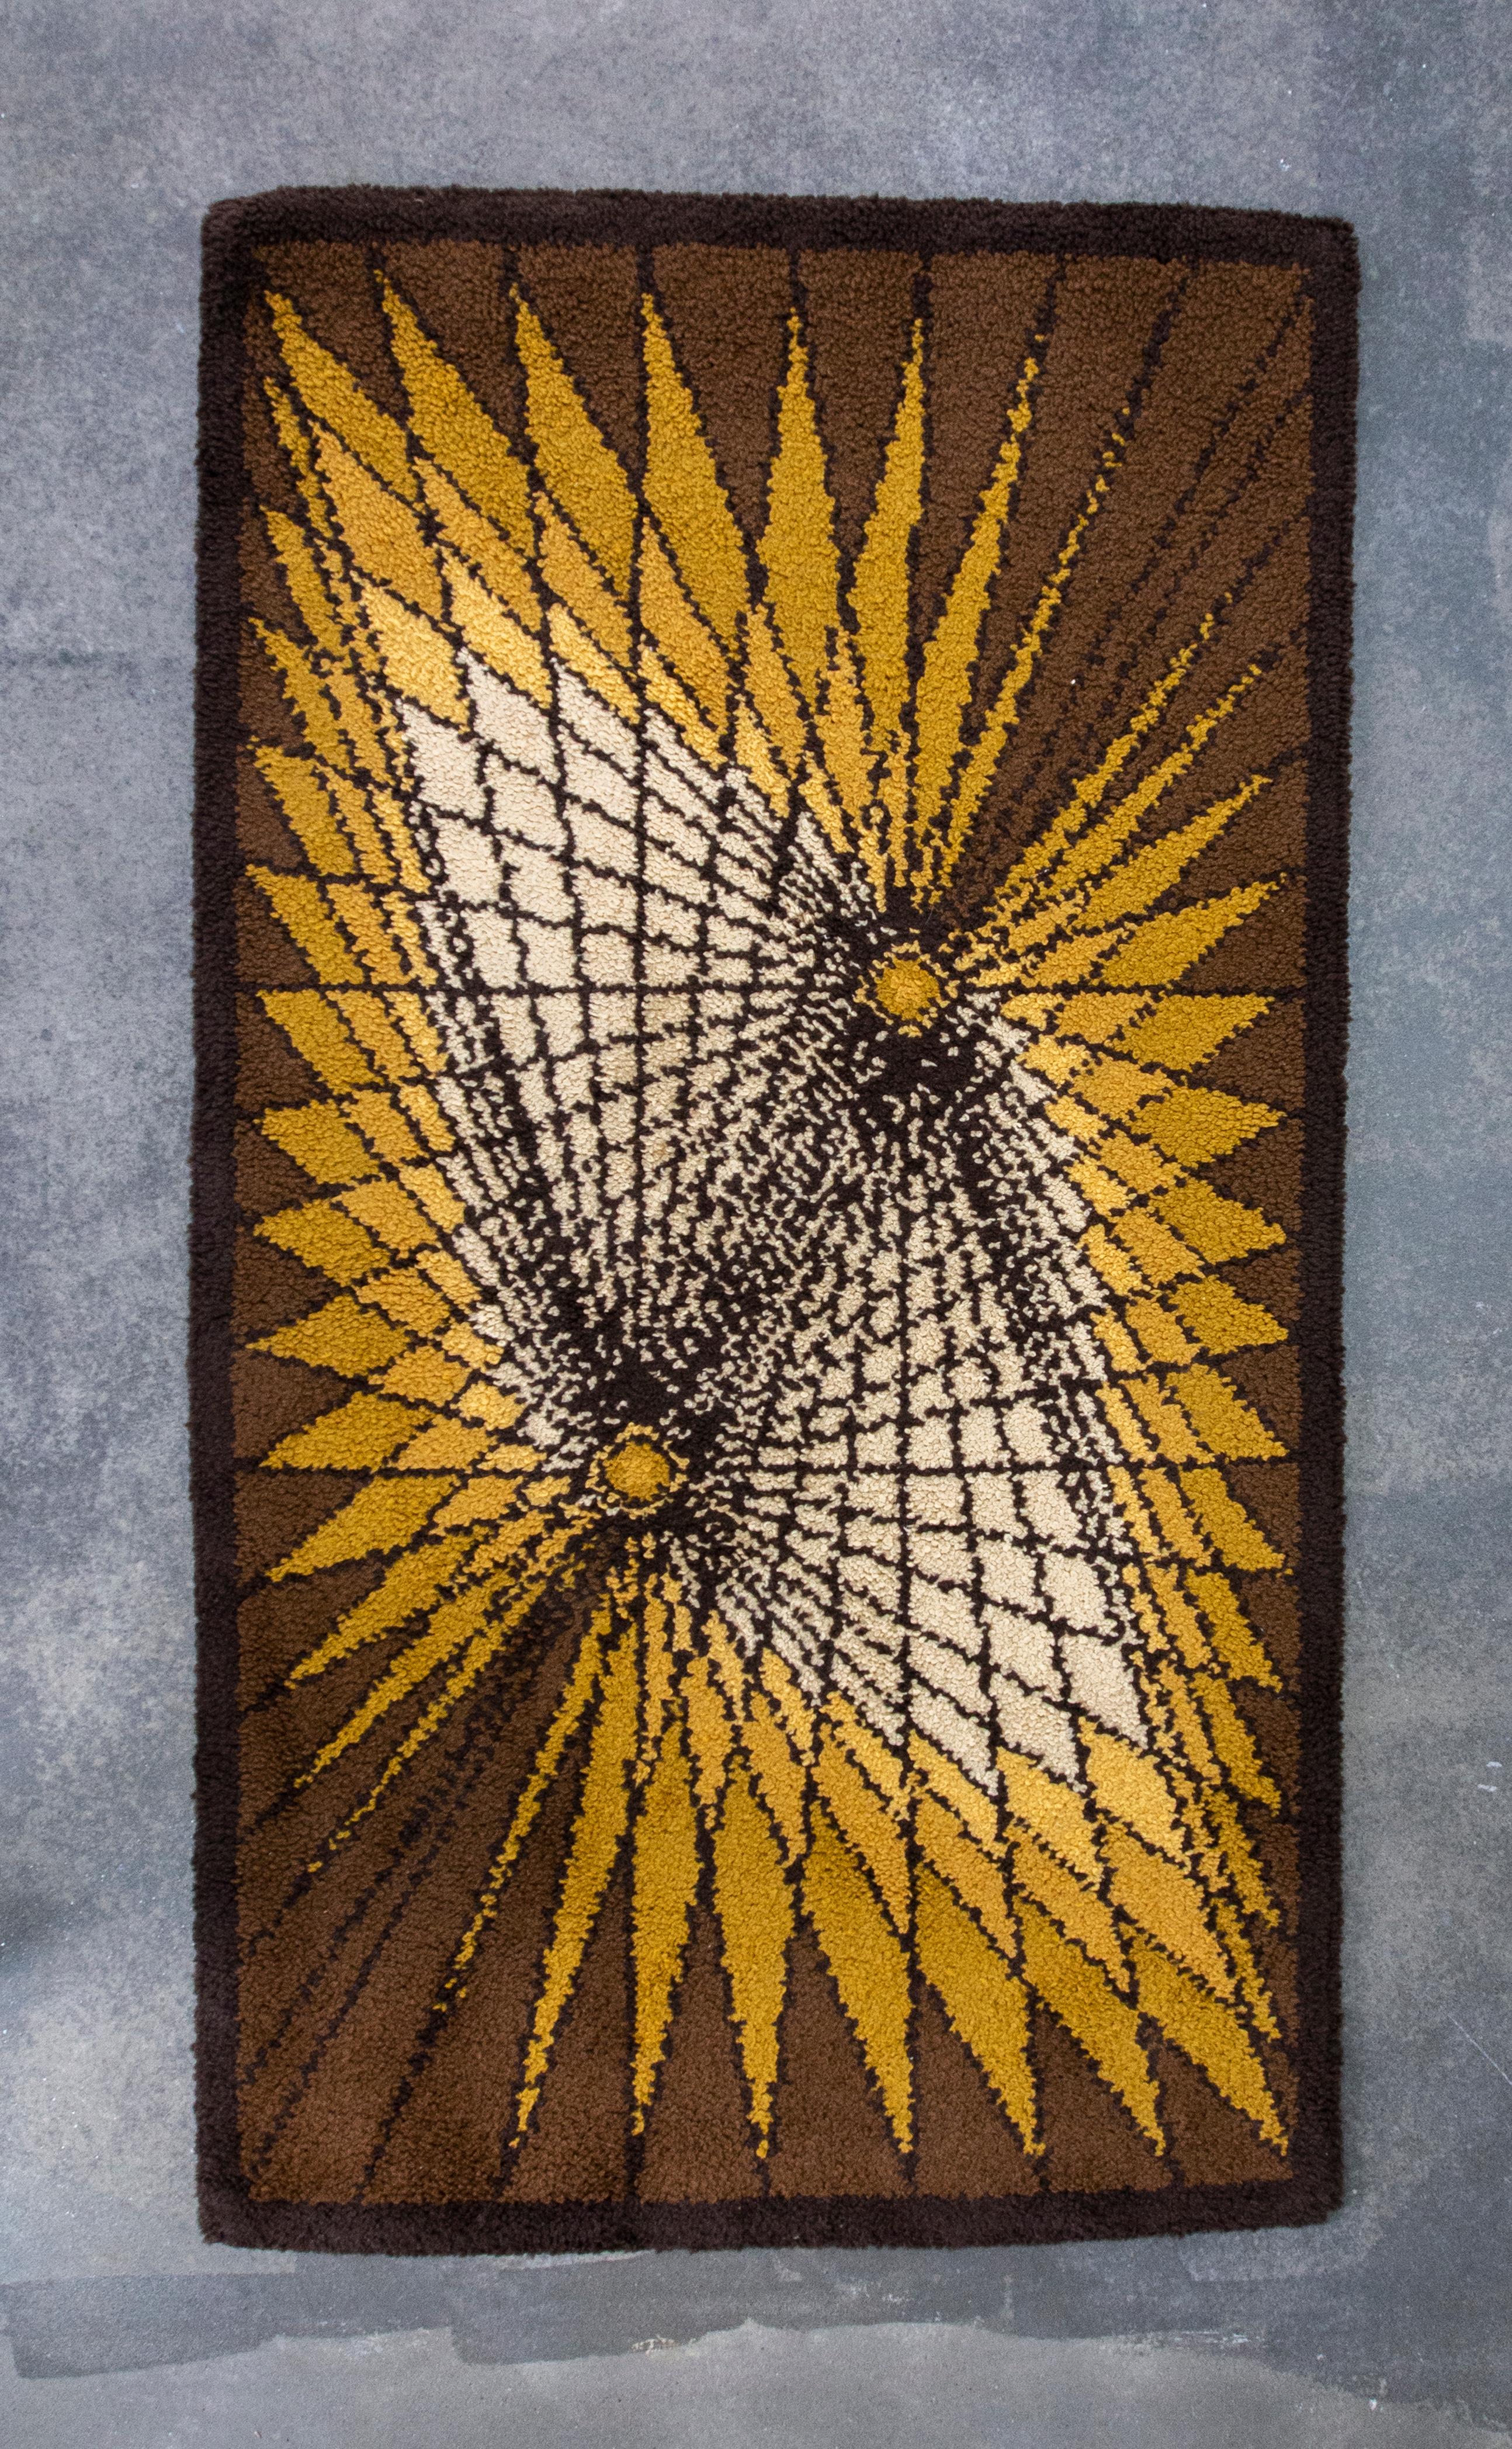 Petit tapis scandinave vintage en laine Rya, présentant des motifs géométriques en jaune, brun et blanc cassé. Ce tapis exceptionnellement décoratif est un parfait exemple de la conception de tapis des années 1970 en Europe du Nord. Le tapis est en